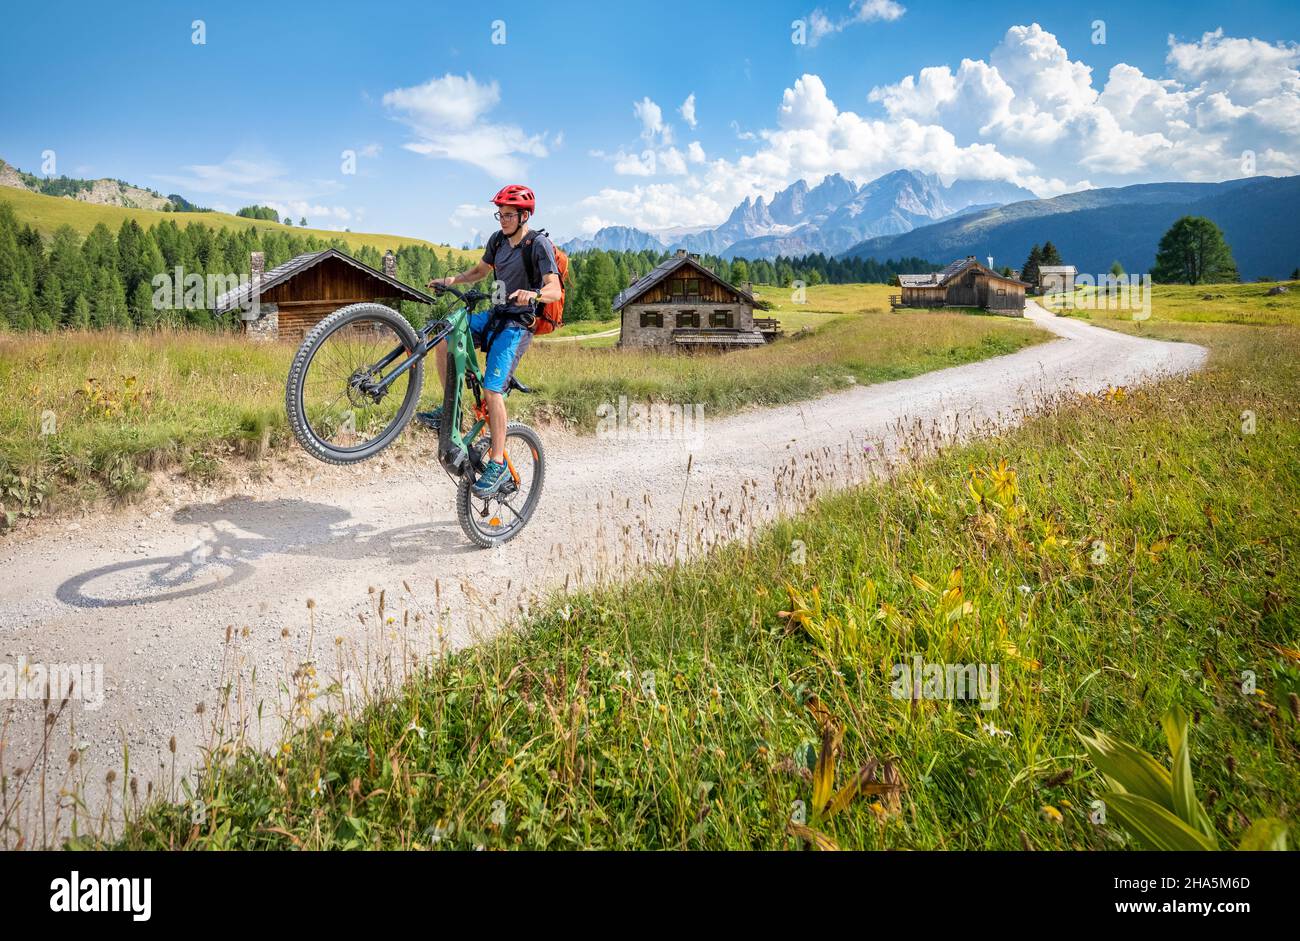 Radler auf dem E-Bike zwischen den fuciade Hütten mit dem Pale di san martino Gebirge im Hintergrund, Gemeinde soraga, trient, trentino, italien Stockfoto